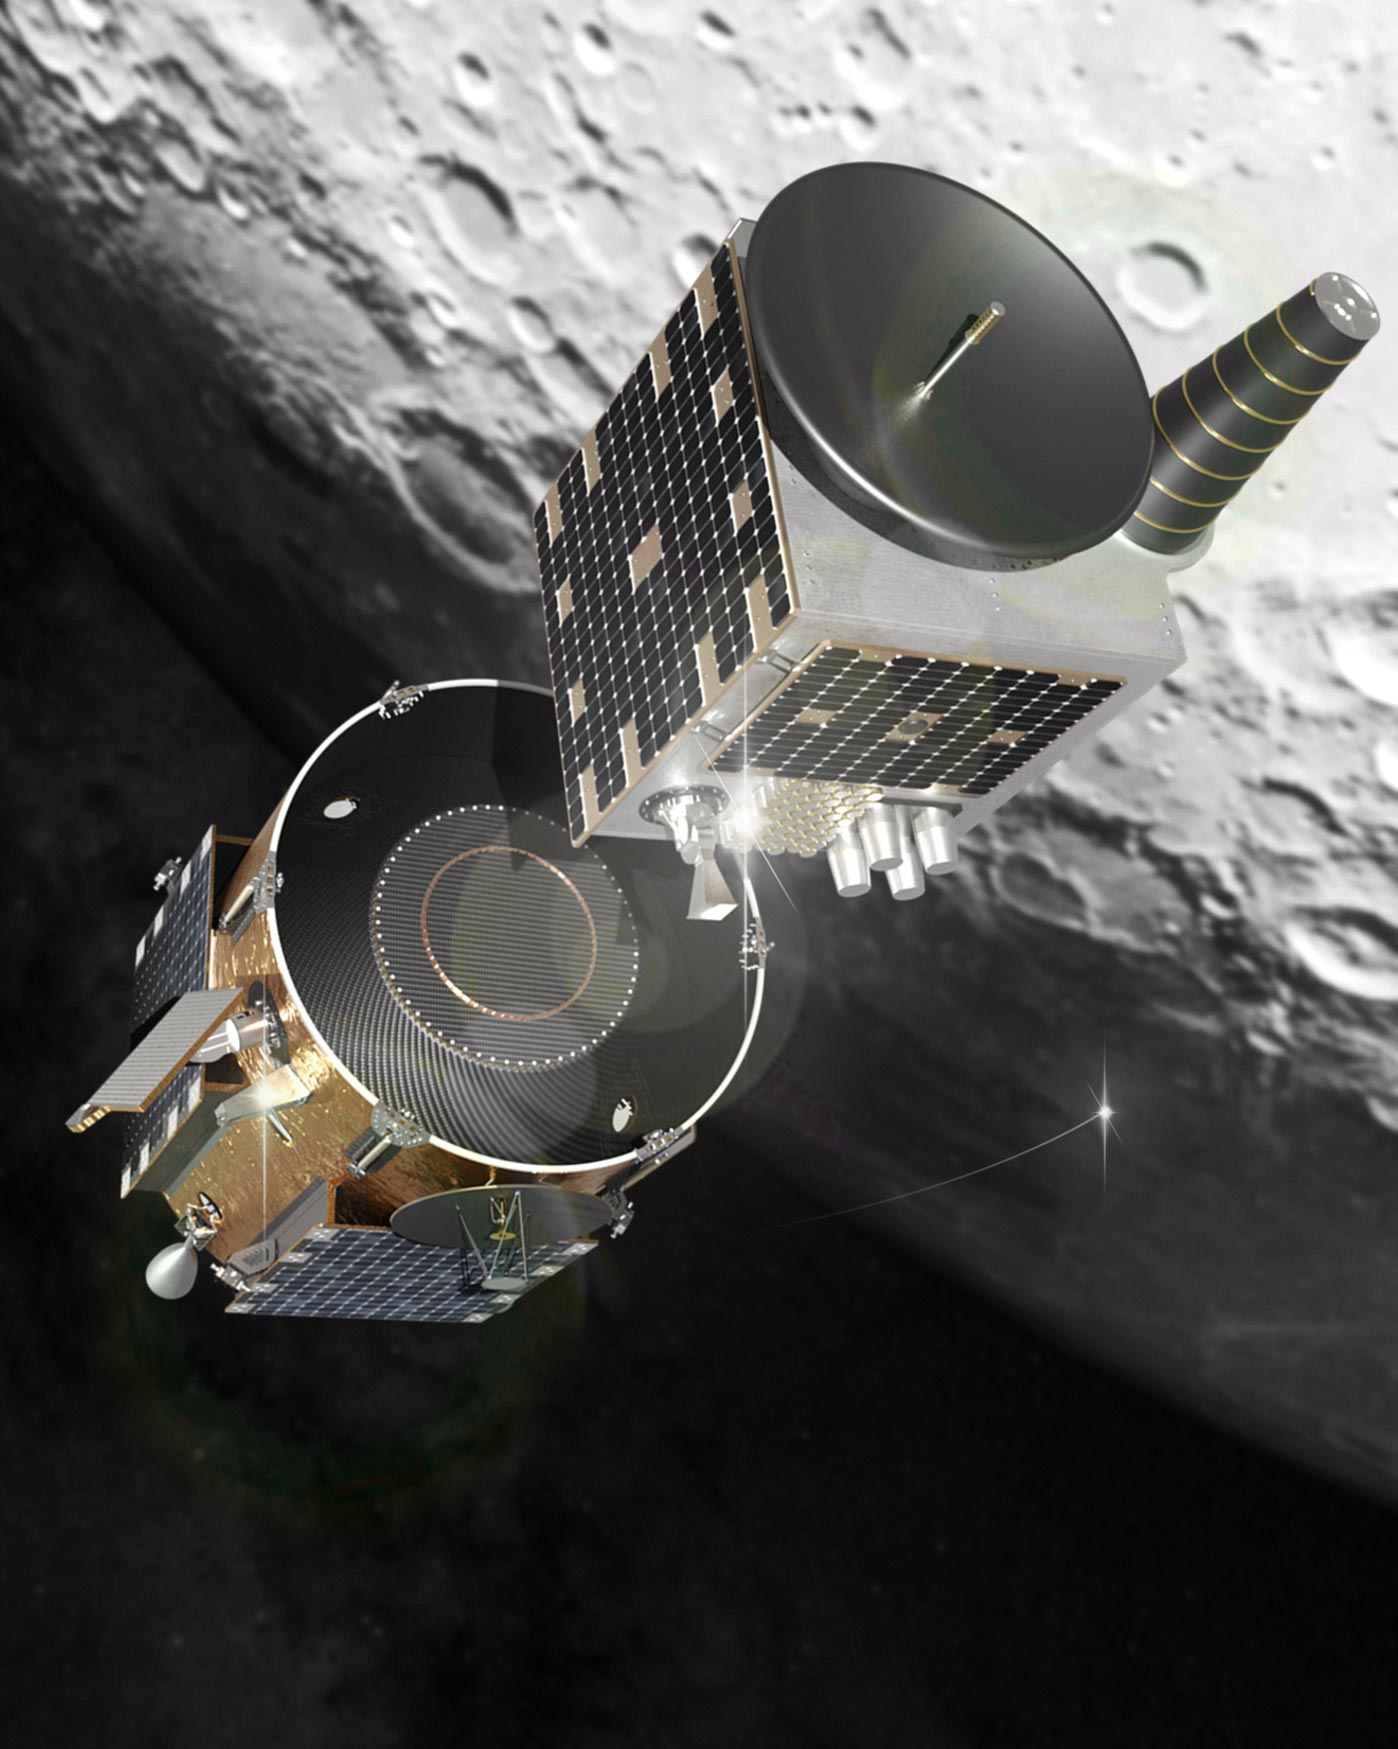 Firefly Aerospace ha sido seleccionado por la NASA para la entrega robótica al otro lado de la Luna